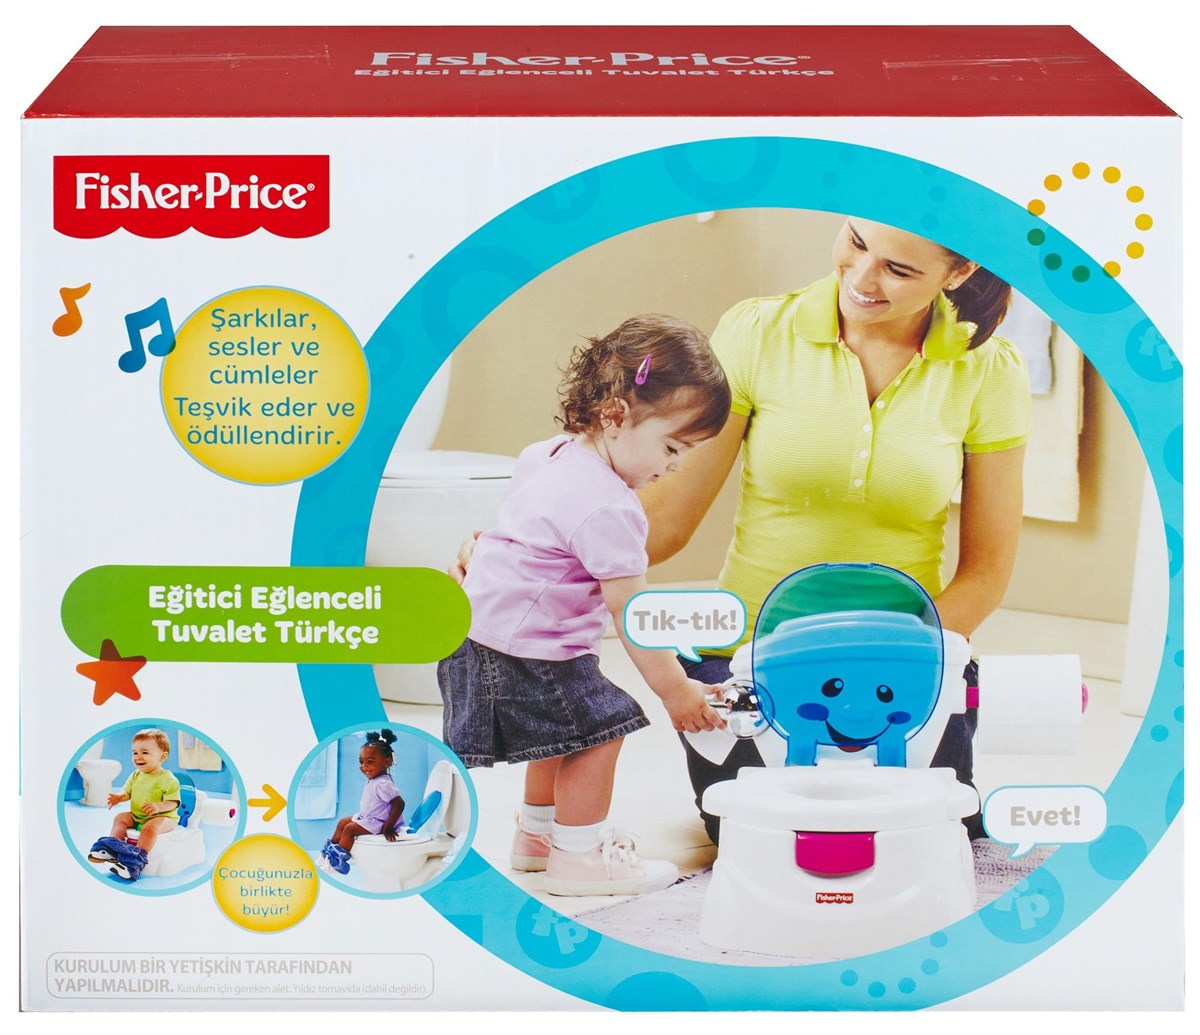 Fisher Price Eğitici Eğlenceli Tuvalet (Türkçe)  BMD23 | Toysall